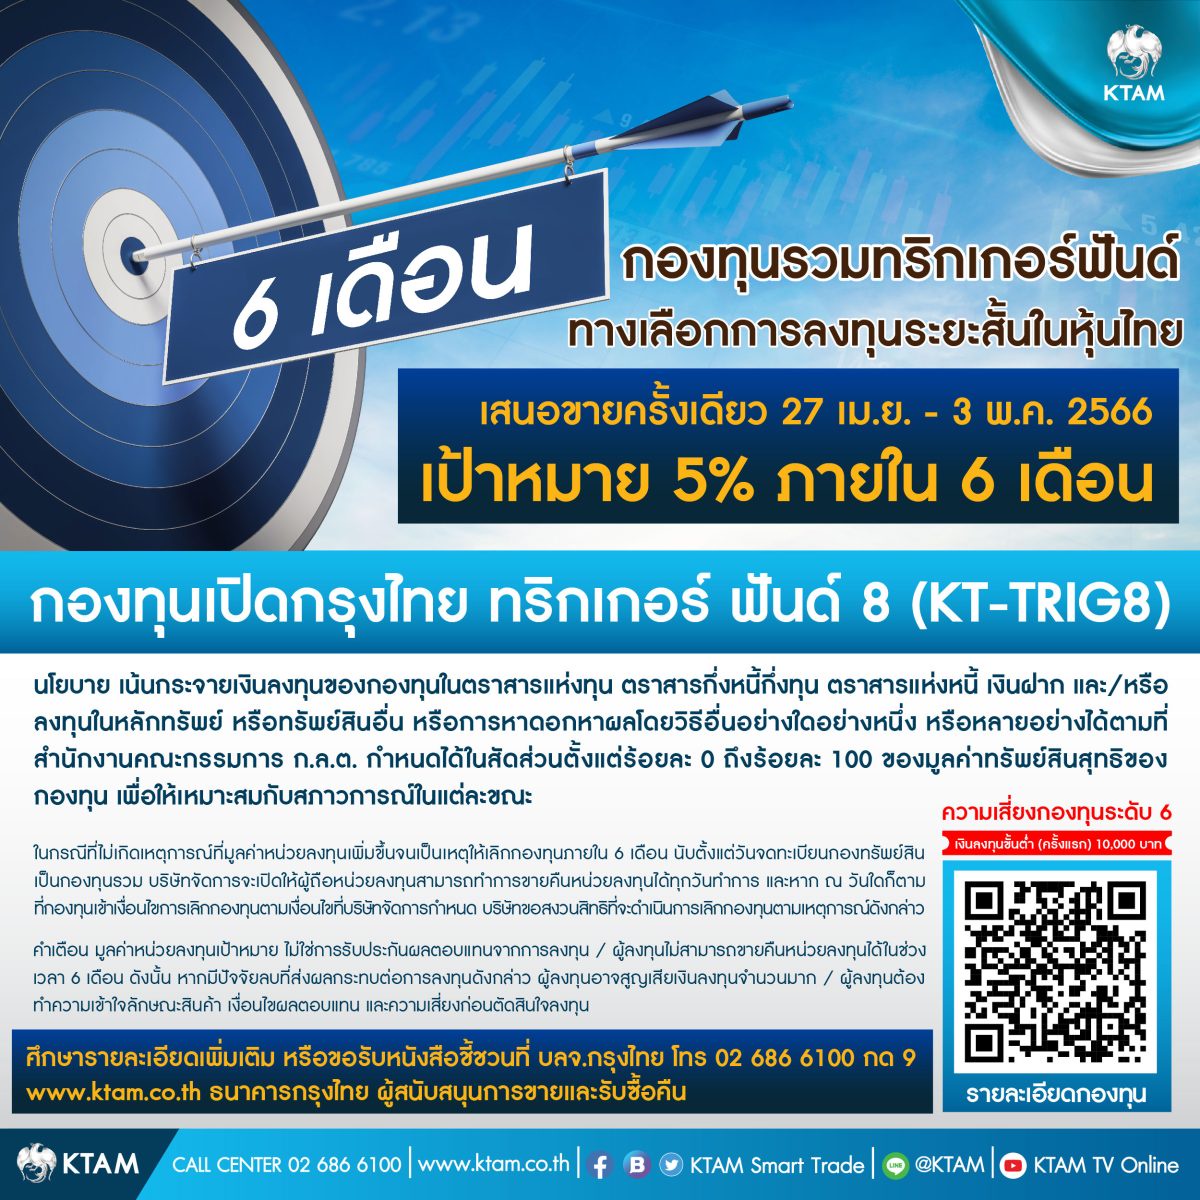 KTAM เล็งจังหวะลุยหุ้นไทย ปล่อยกองทริกเกอร์ต่อเนื่อง KT-TRIG8 เสนอขาย 27 เม.ย. - 3 พ.ค. นี้ ตั้งเป้า 5% ใน 6